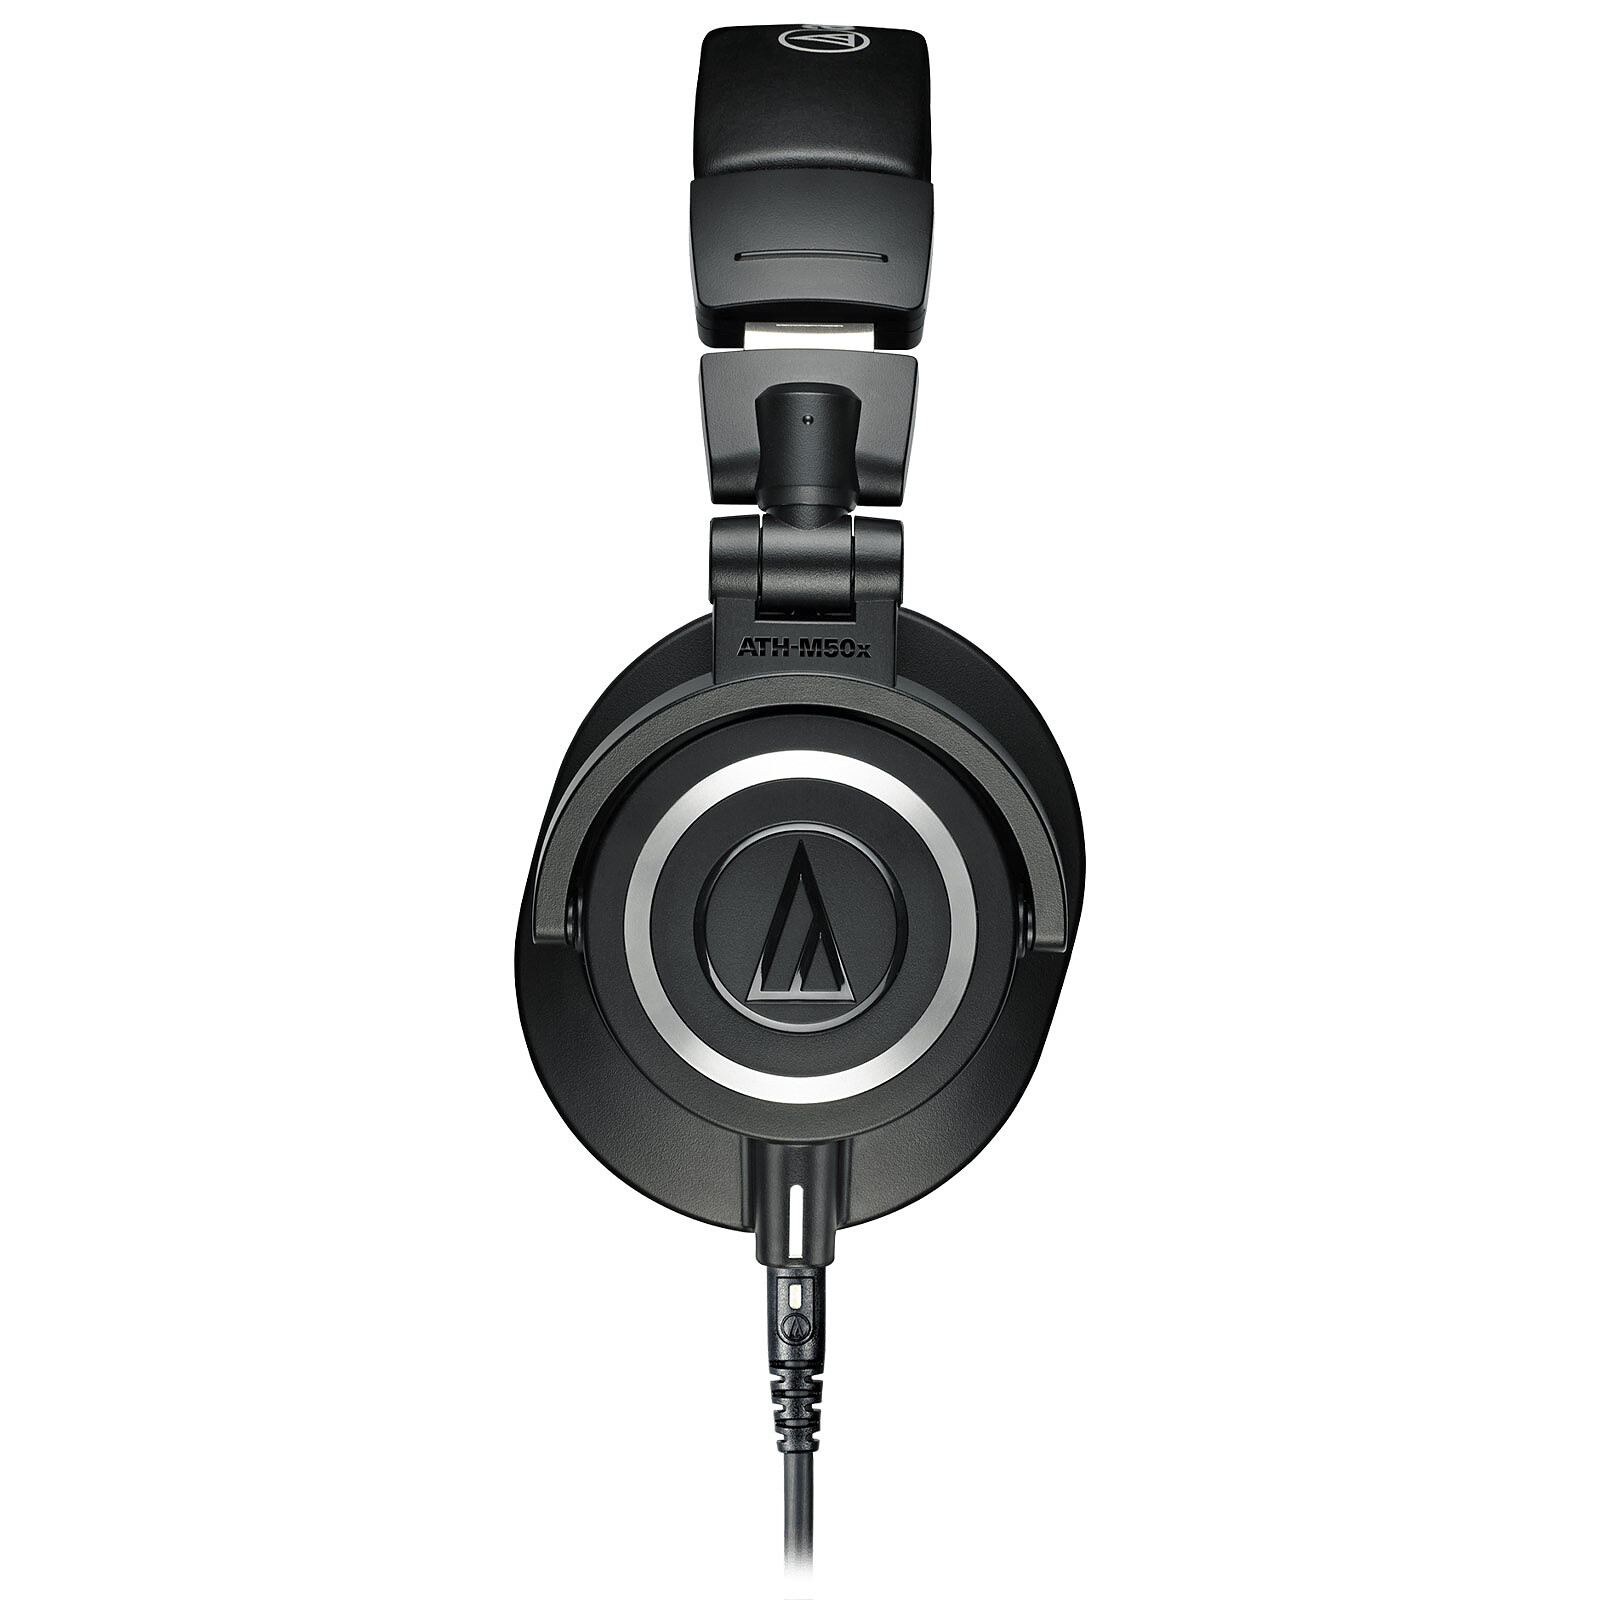 Audio-Technica ATH-M20x Audífonos profesionales de estudio, color negro